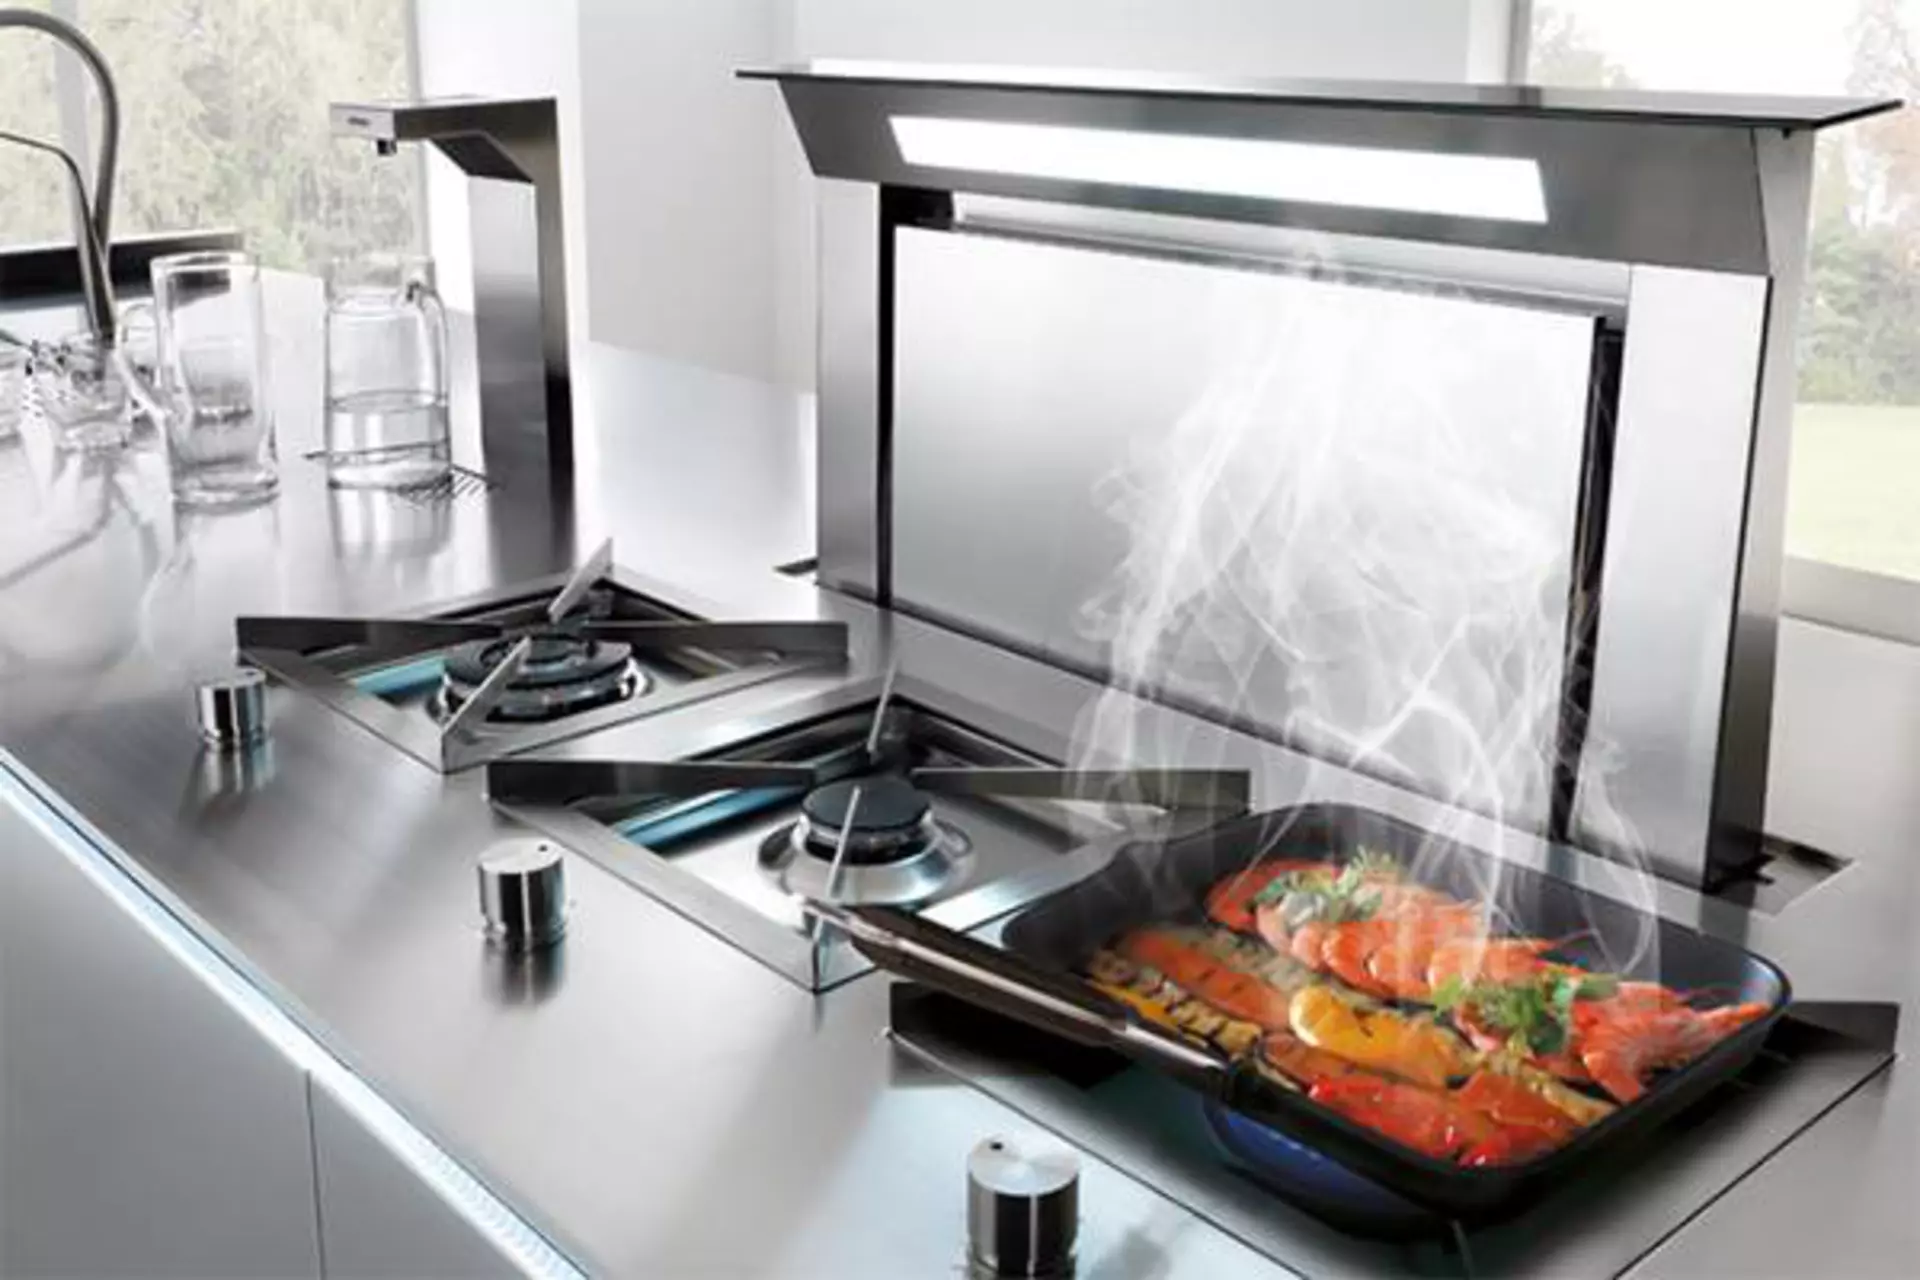 Gasherd mit moderner Edelstahl-Dunstabzugshaube dient asl Kategoriebild für Einbaugeräte in der Küche.